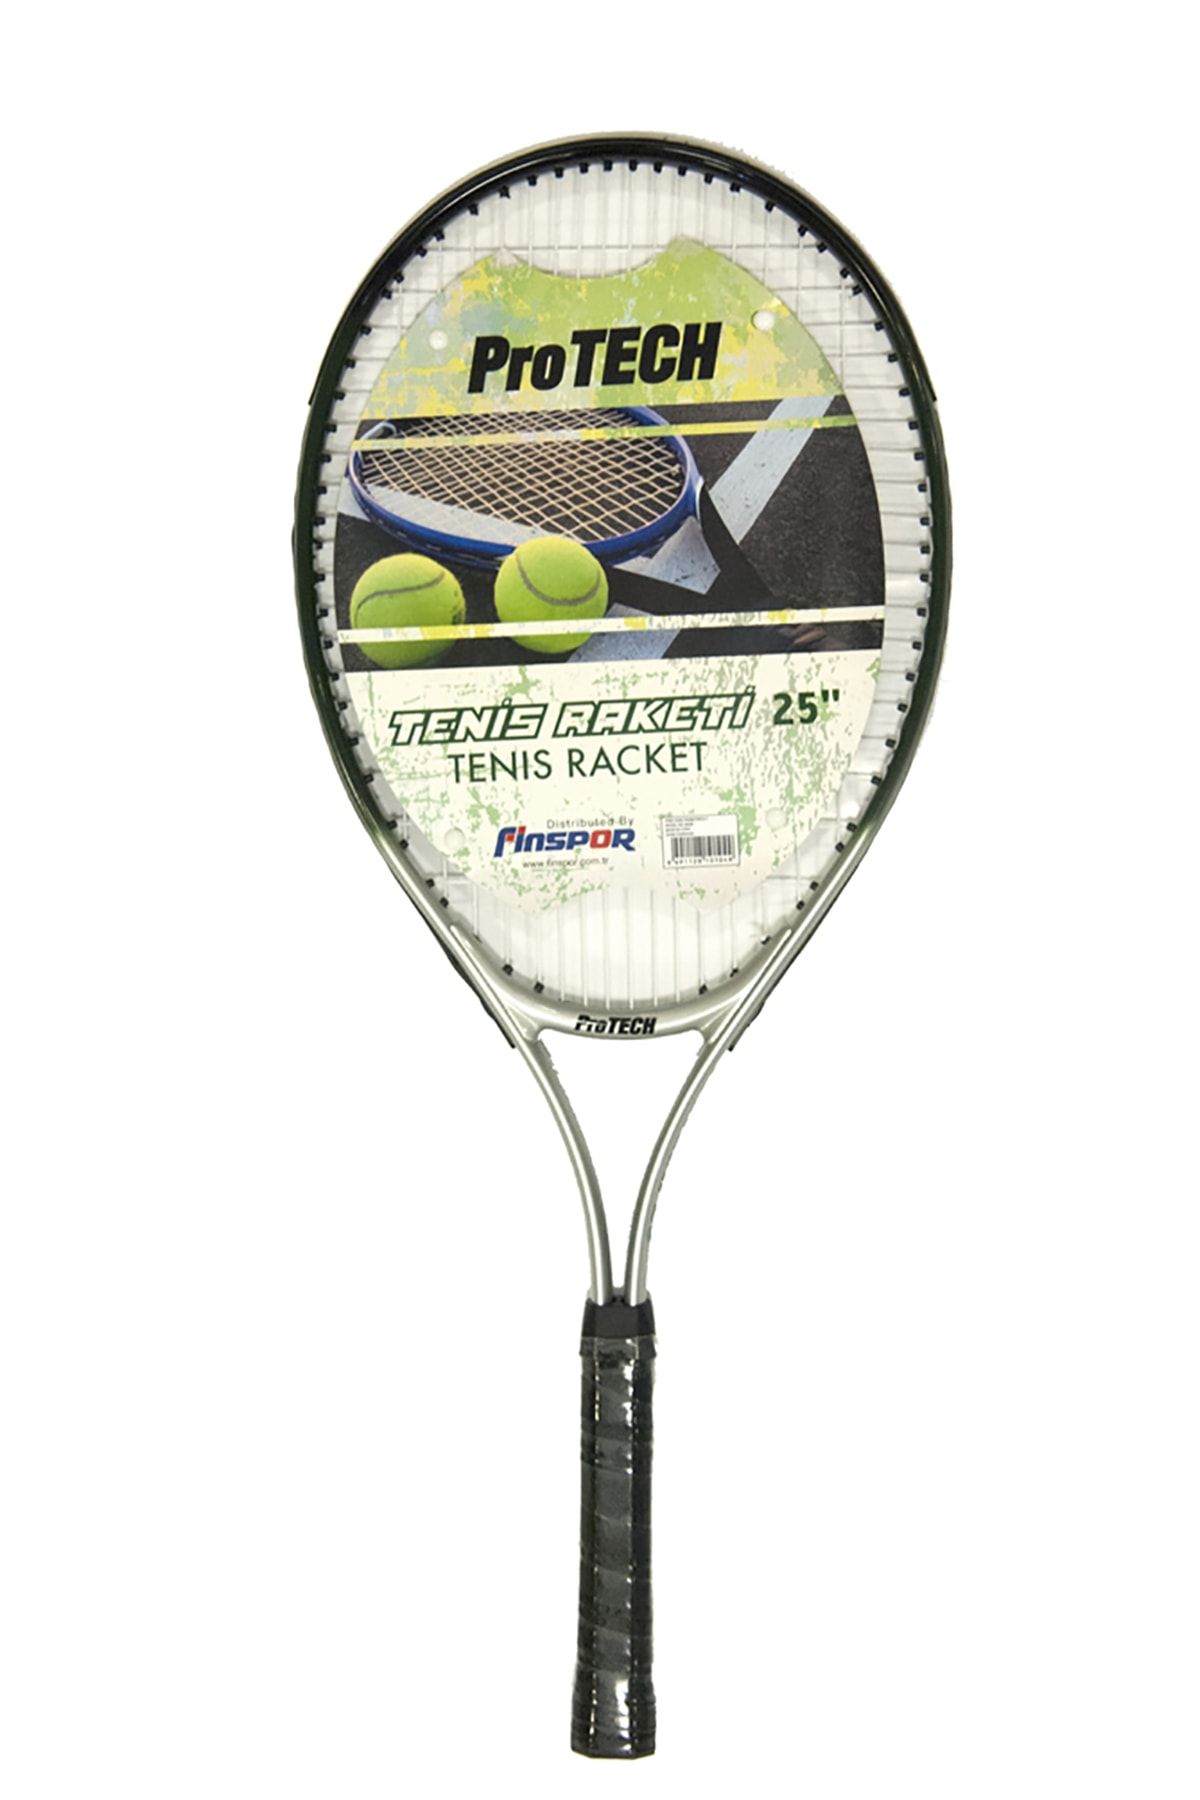 Protech M500 Tenis Raketi - 25